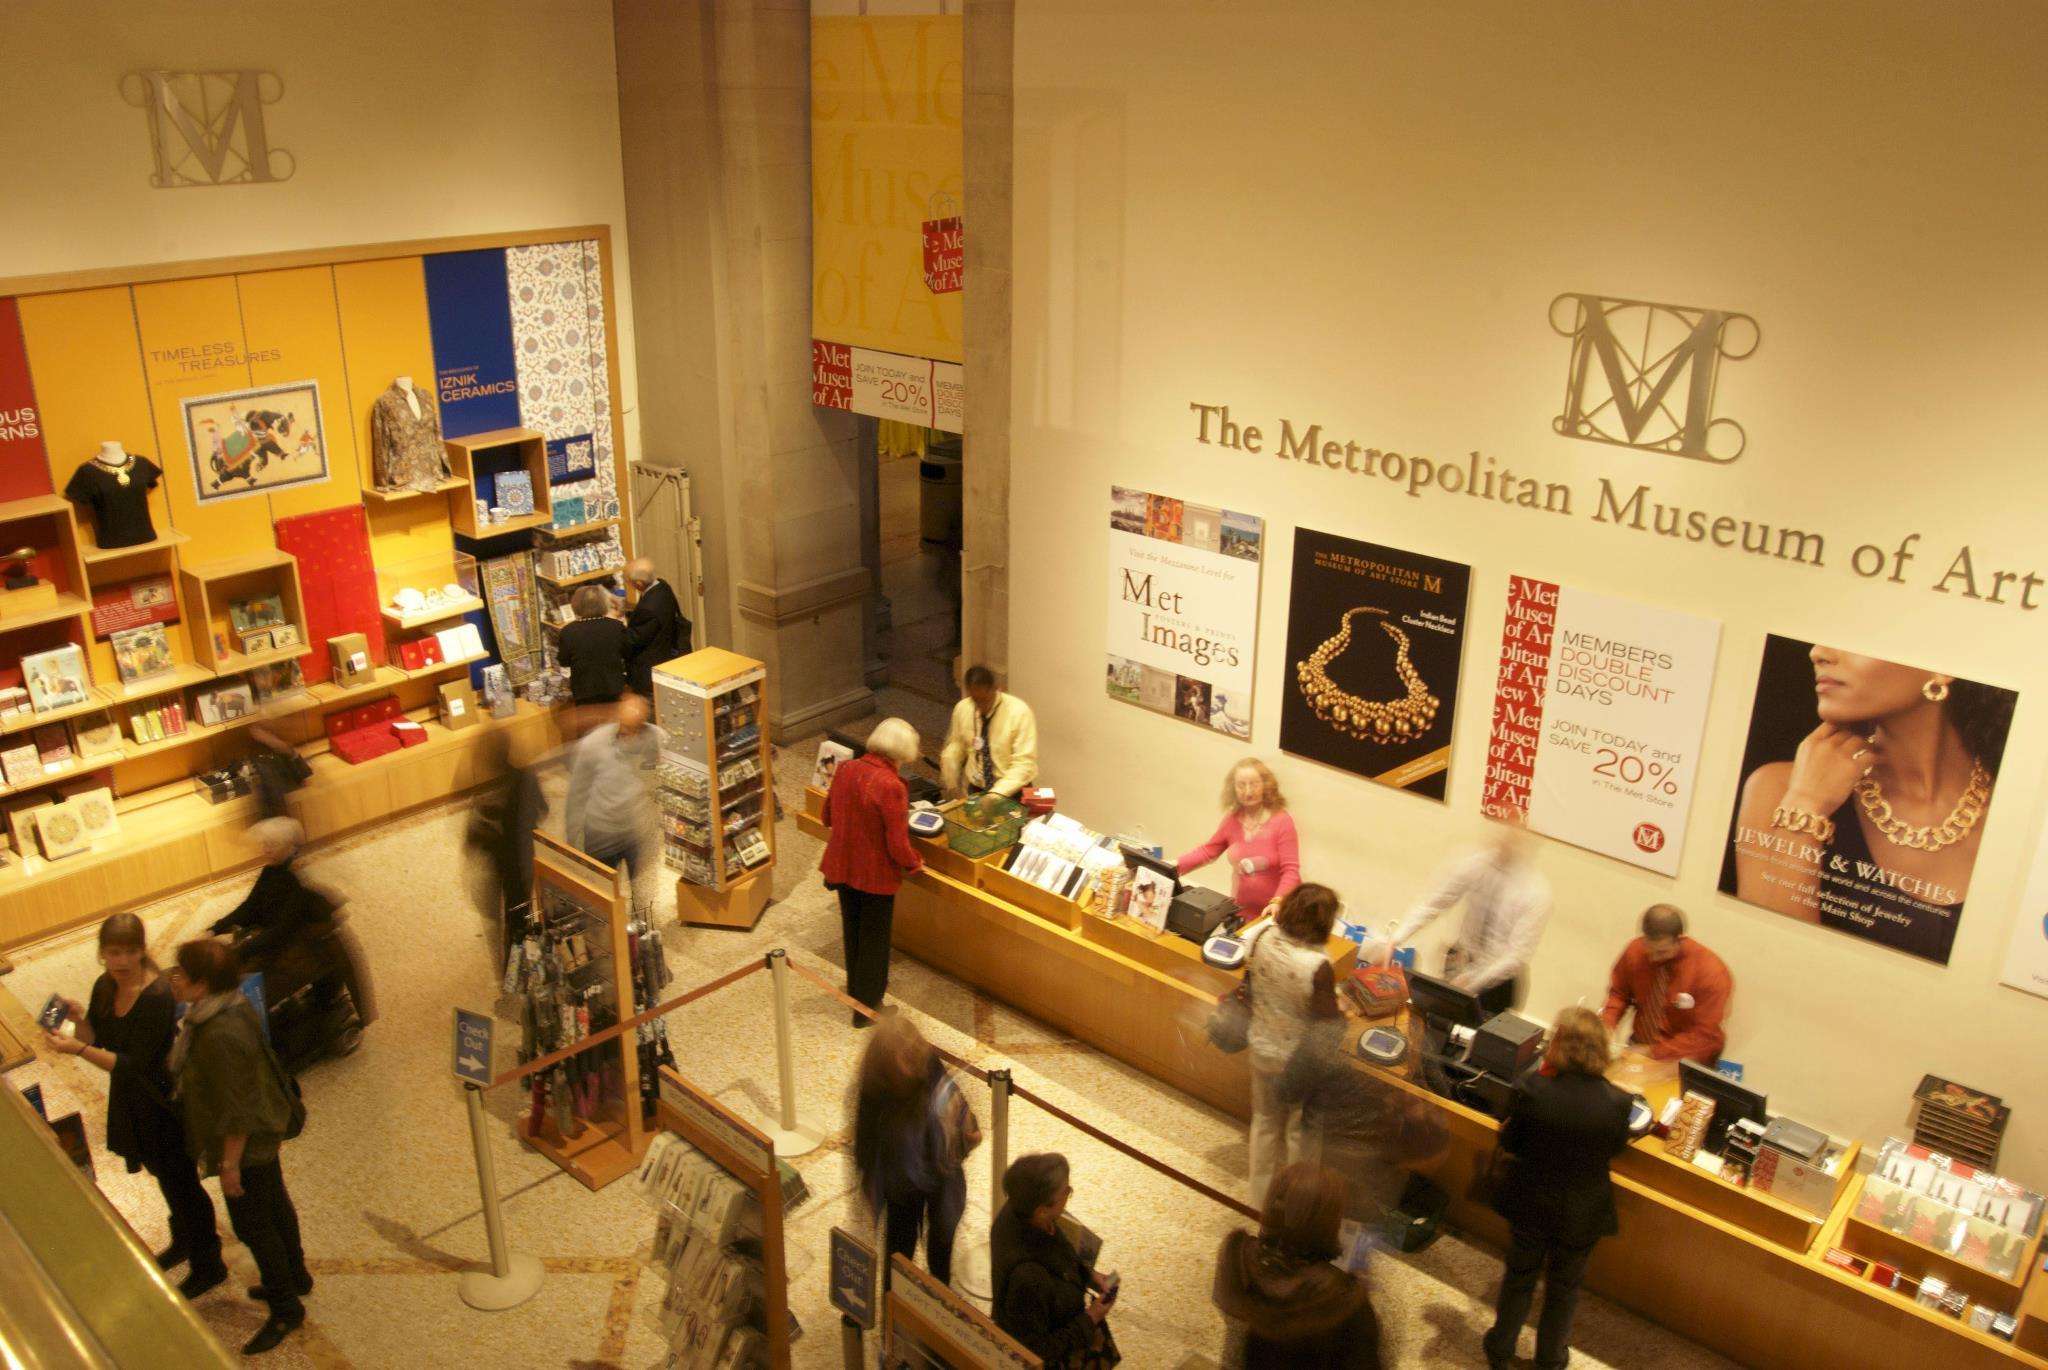 The Metropolitan Museum of Art Store